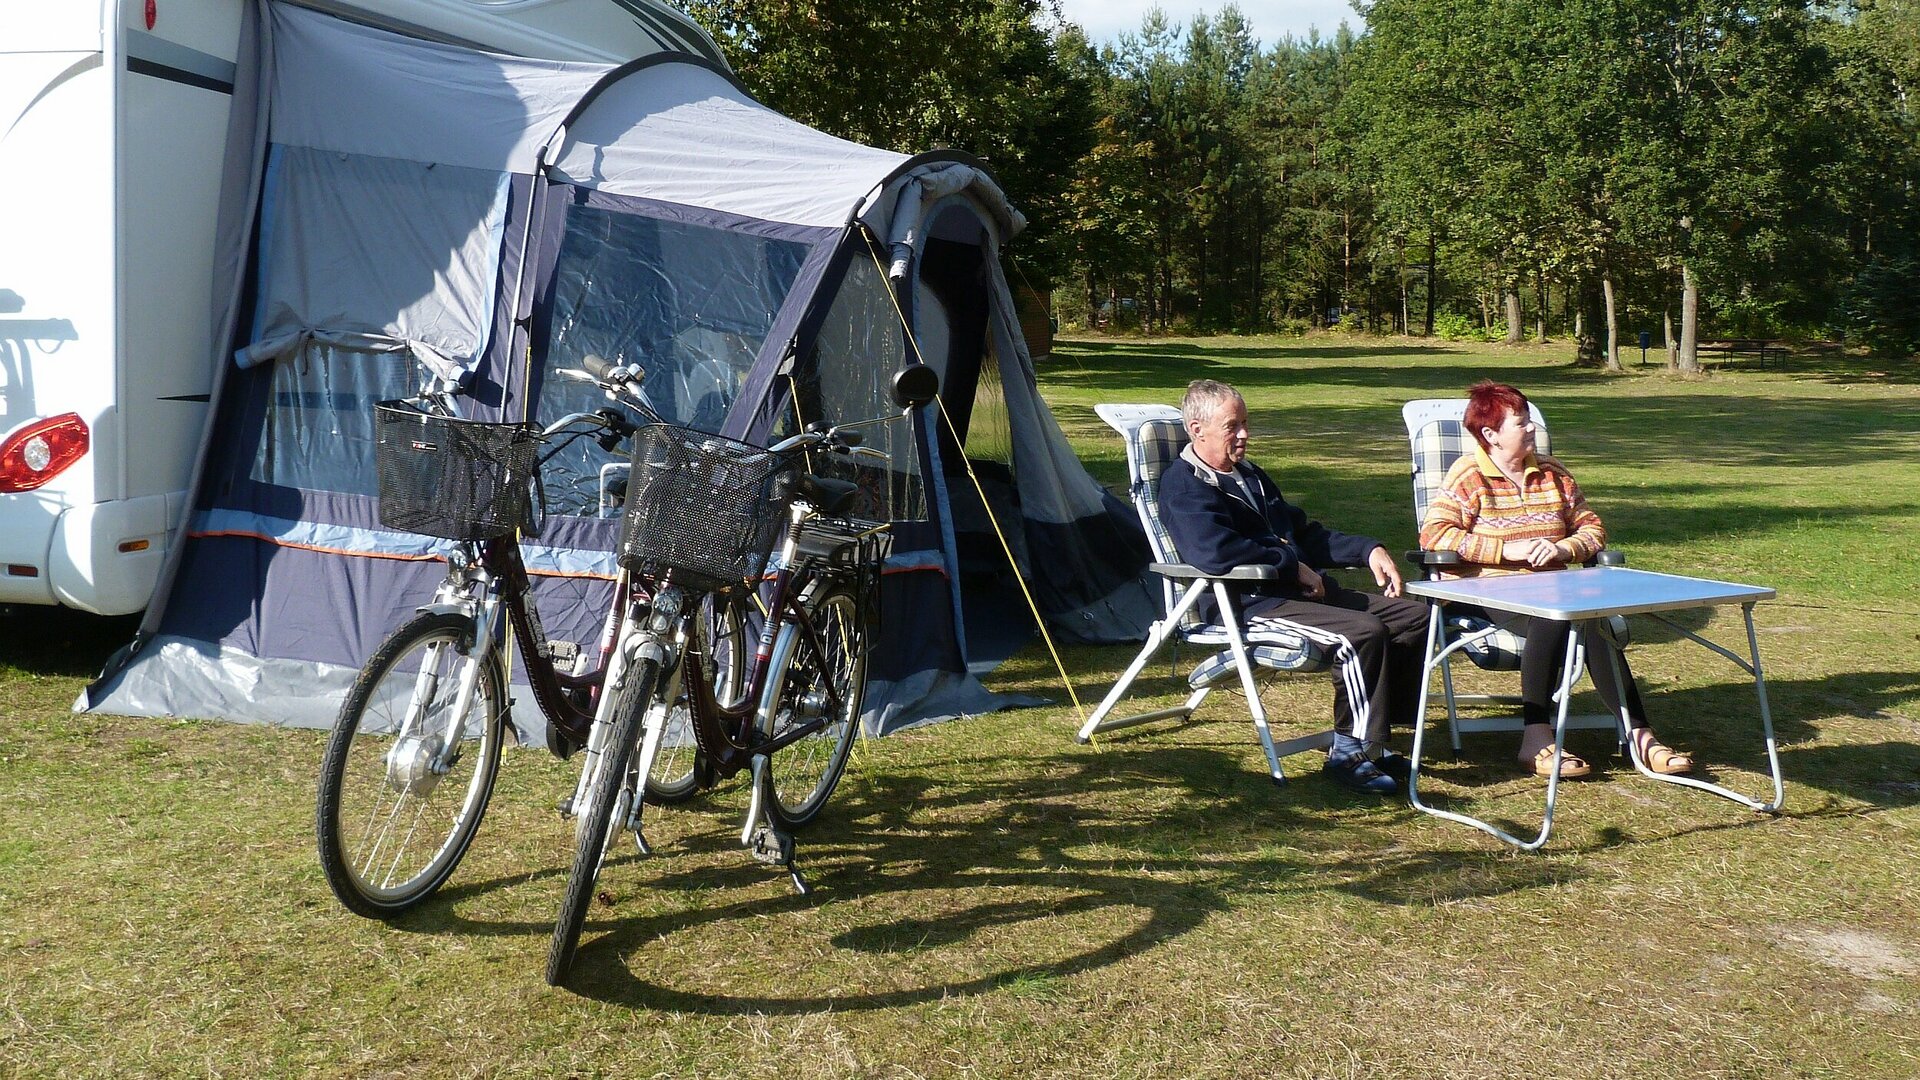 Ein Paar im Seniorenalter sitzt neben seinen Fahrrädern am Campingtisch vor einem Wohnmobil.